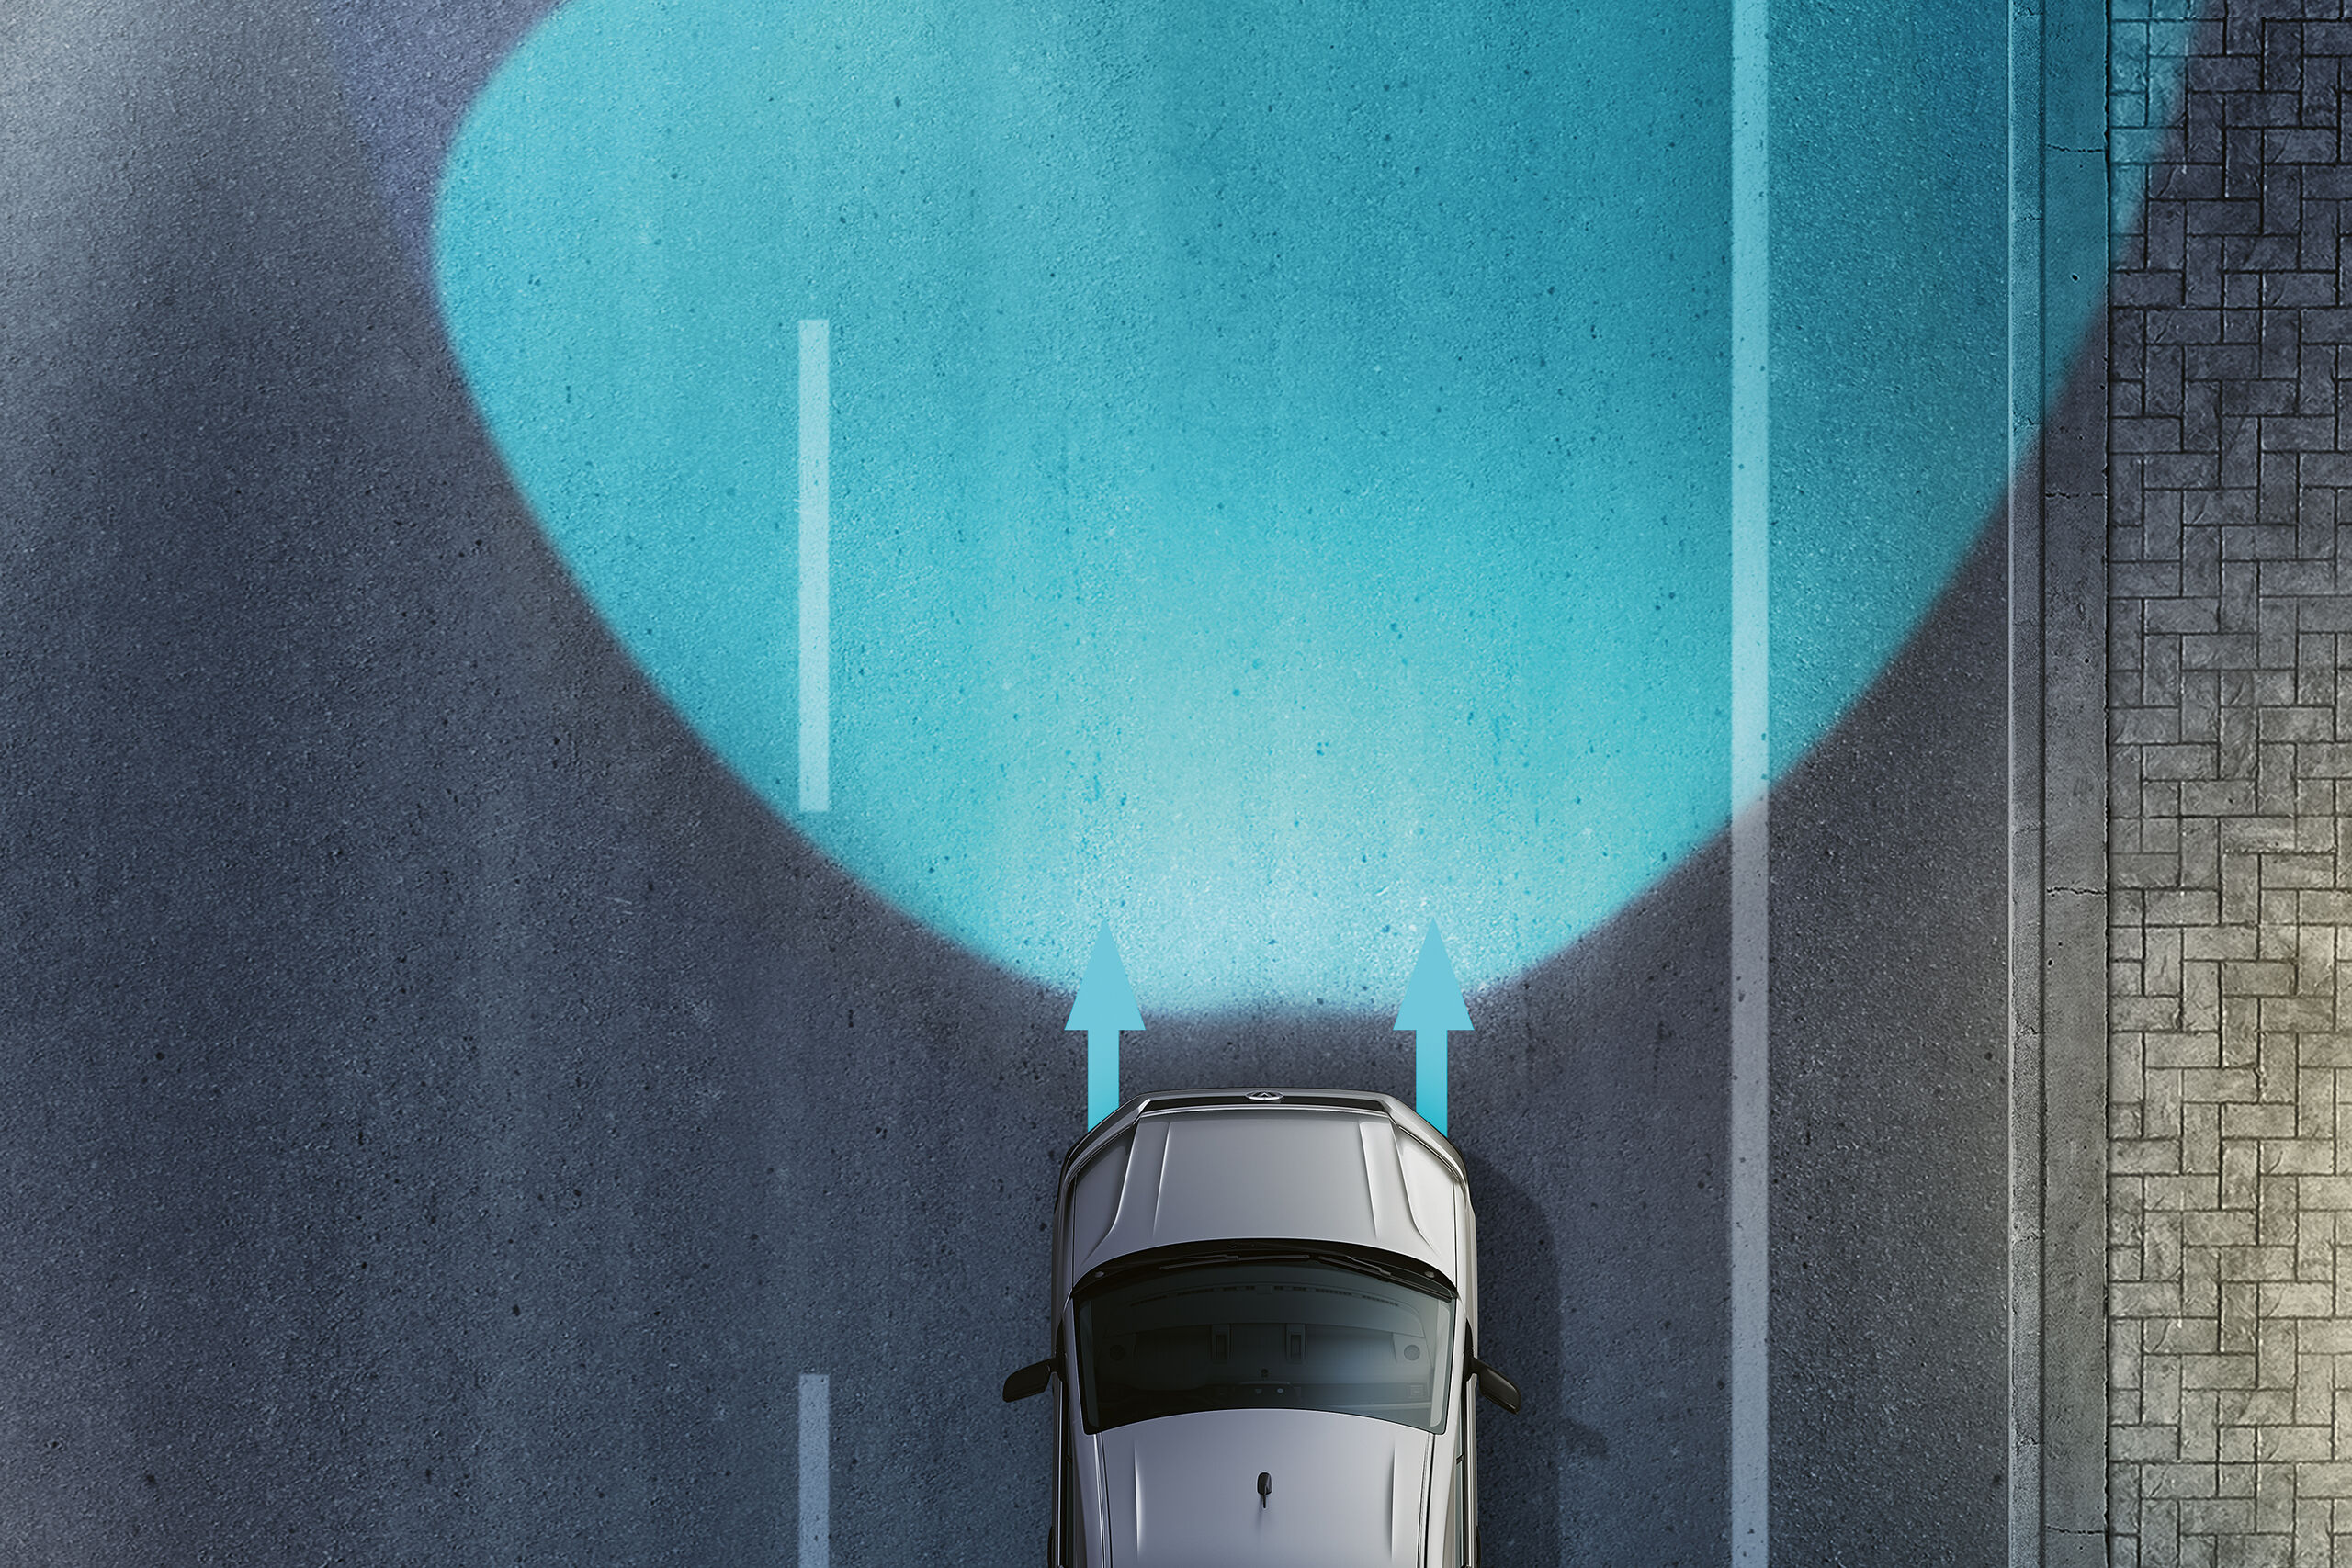 Një ilustrim i Crafter nga Volkswagen Automjete Komerciale tregon me këndvështrim nga lart se si funksionon sistemi i kontrollit të dritave "Lane Assist".